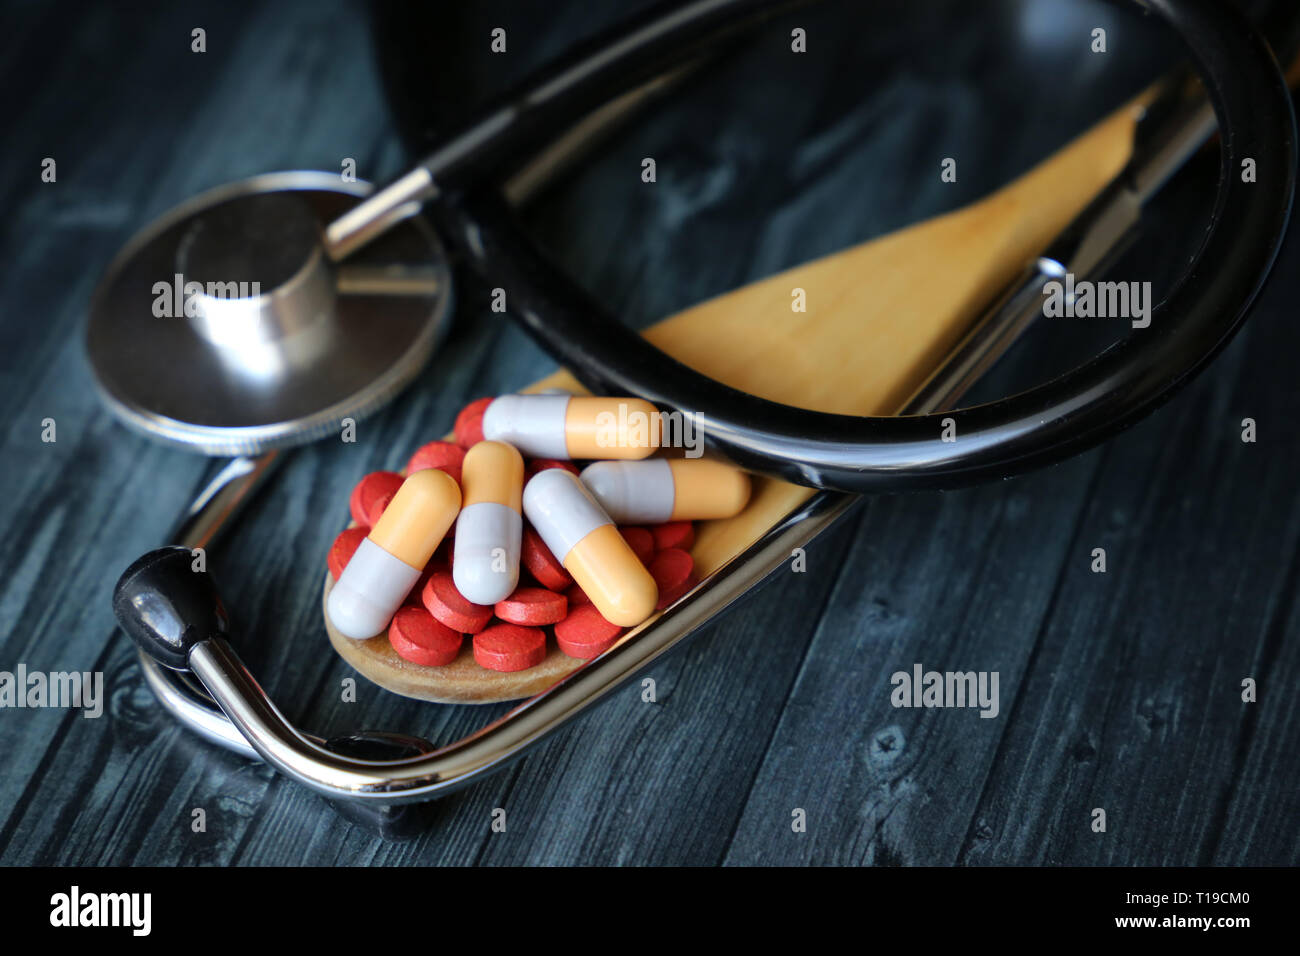 Pillole e capsule in un cucchiaio di legno e stetoscopio scuro su un tavolo di legno. Concetto di salute, farmaci, pressione sanguigna, vitamine, farmacia, trattamento Foto Stock